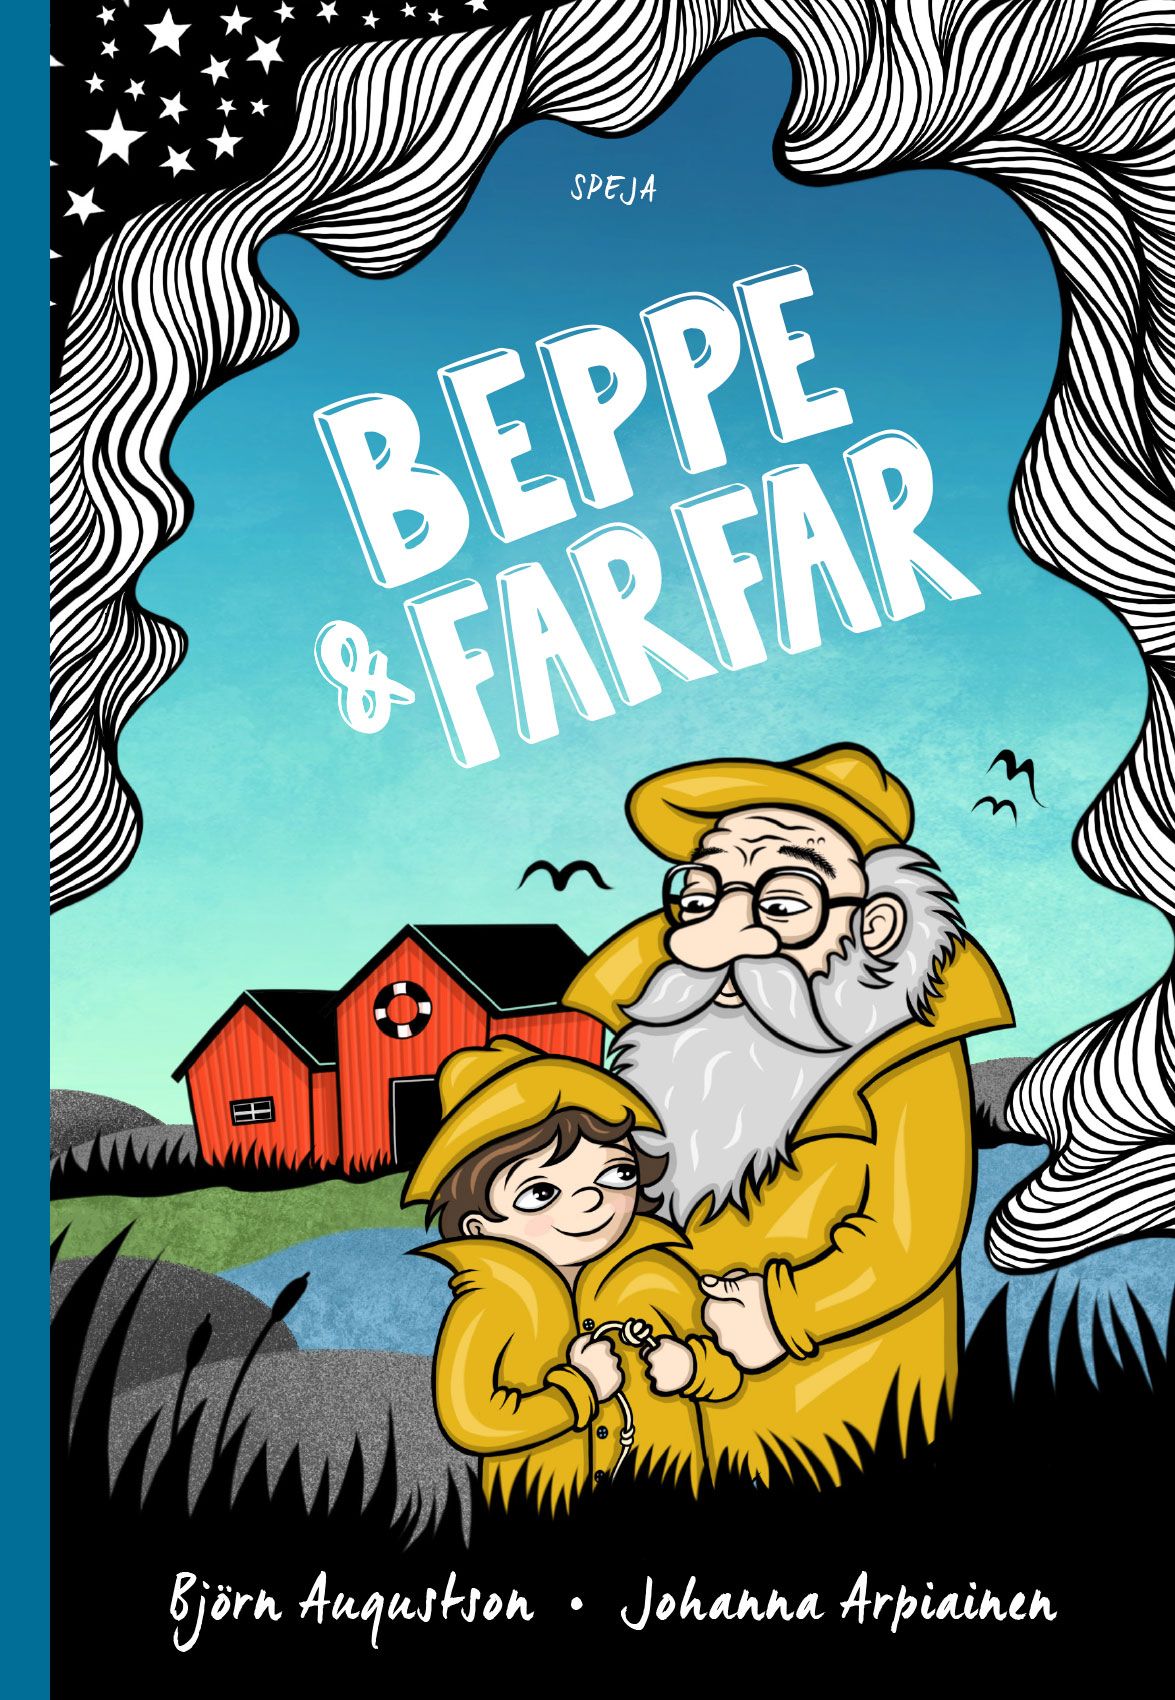 Beppe & Farfar, lydbog af Björn Augustson